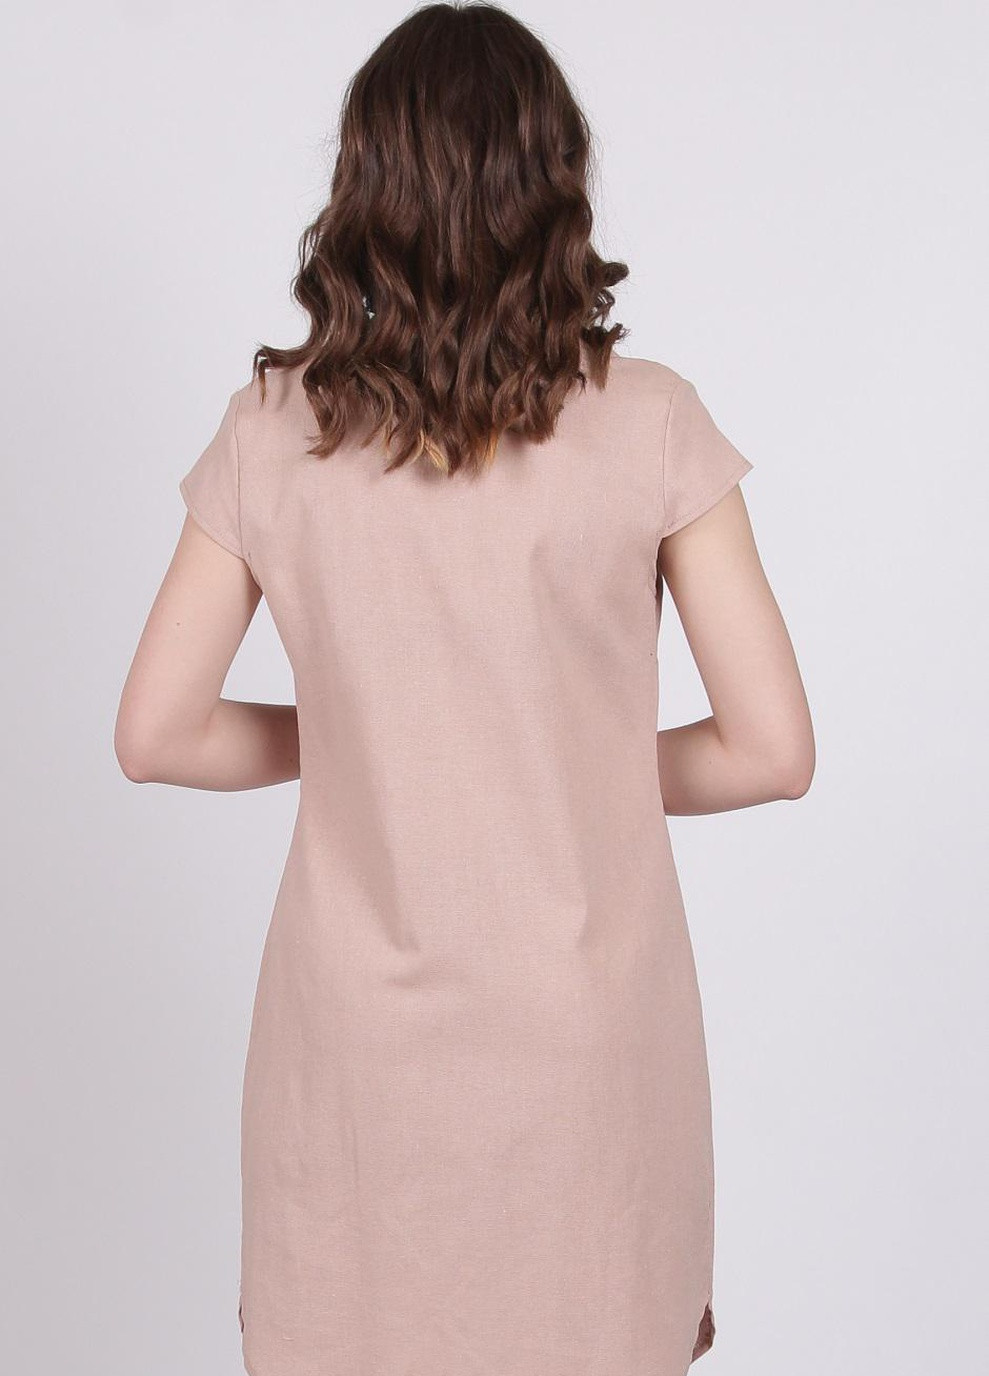 Светло-коричневое кэжуал платье женское 004 однотонный лен бежевый Актуаль